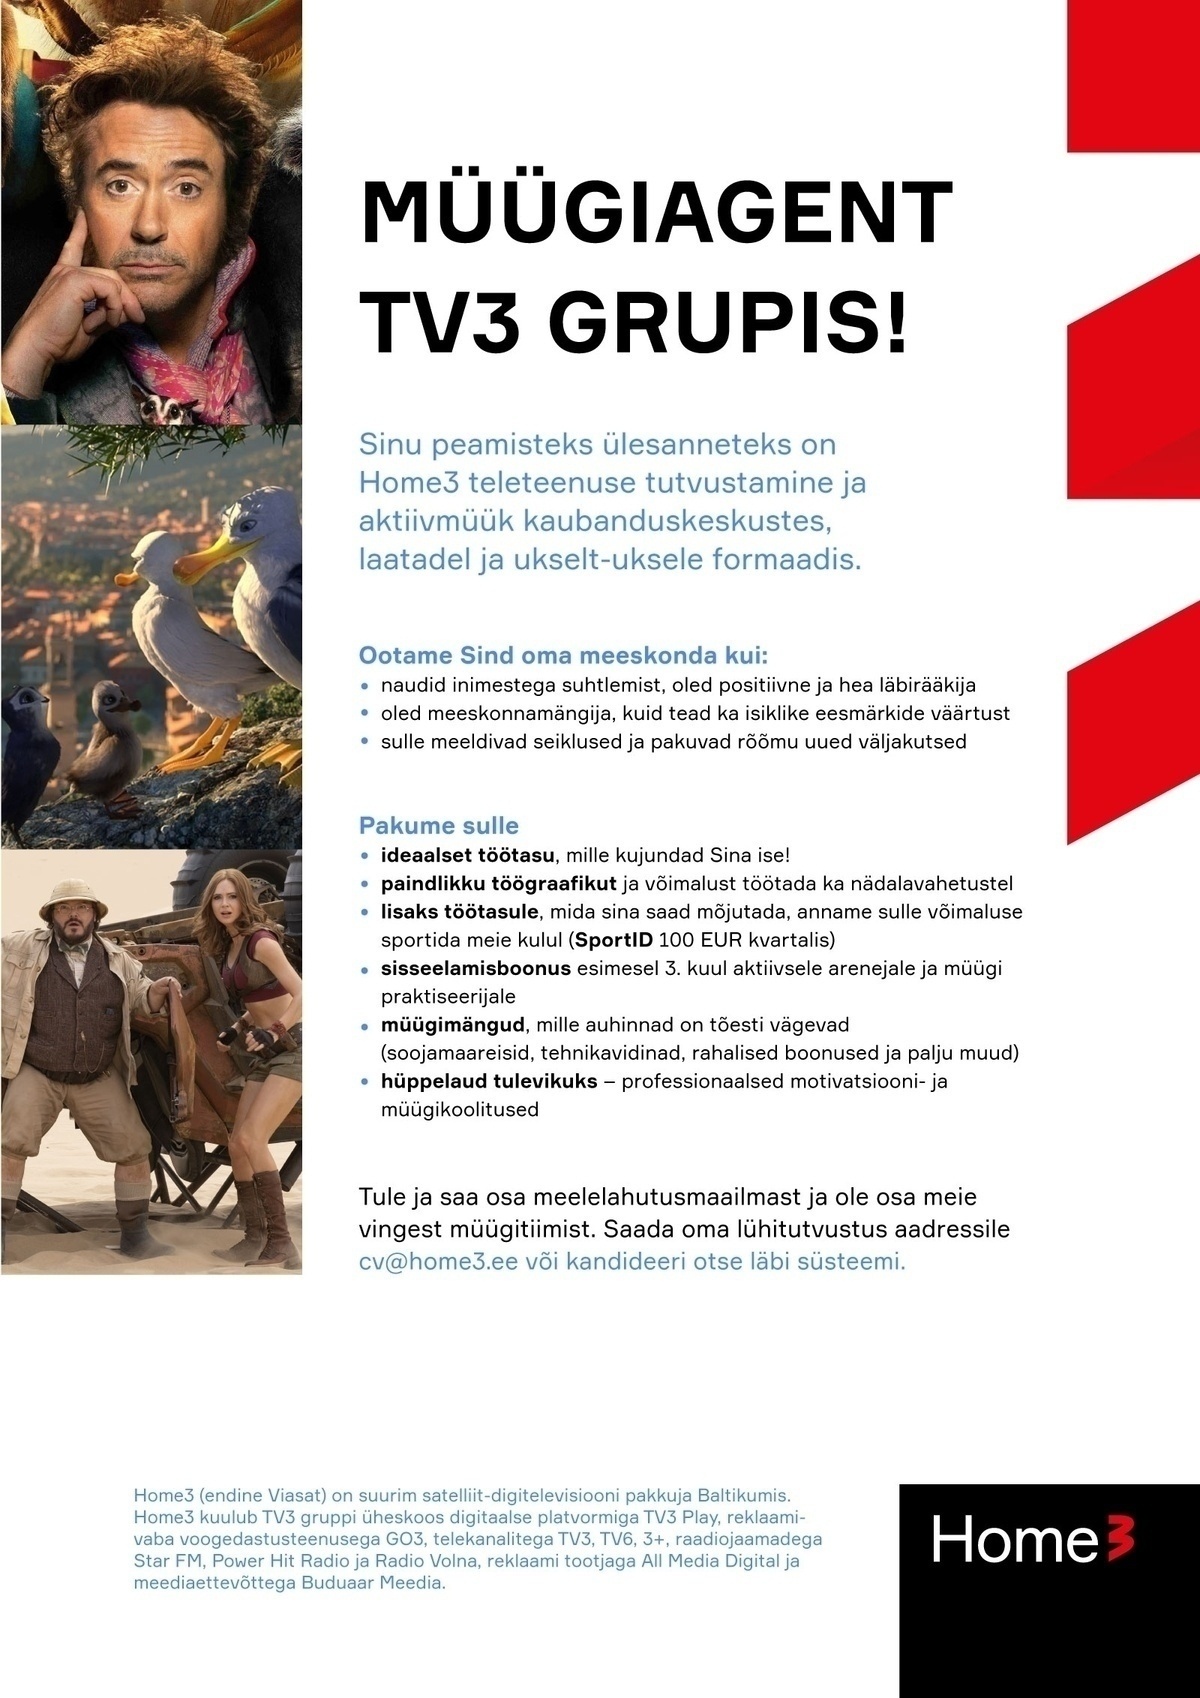 TV PLAY BALTICS AS Müügiagent Pärnus! Tule tööle TV3 gruppi!